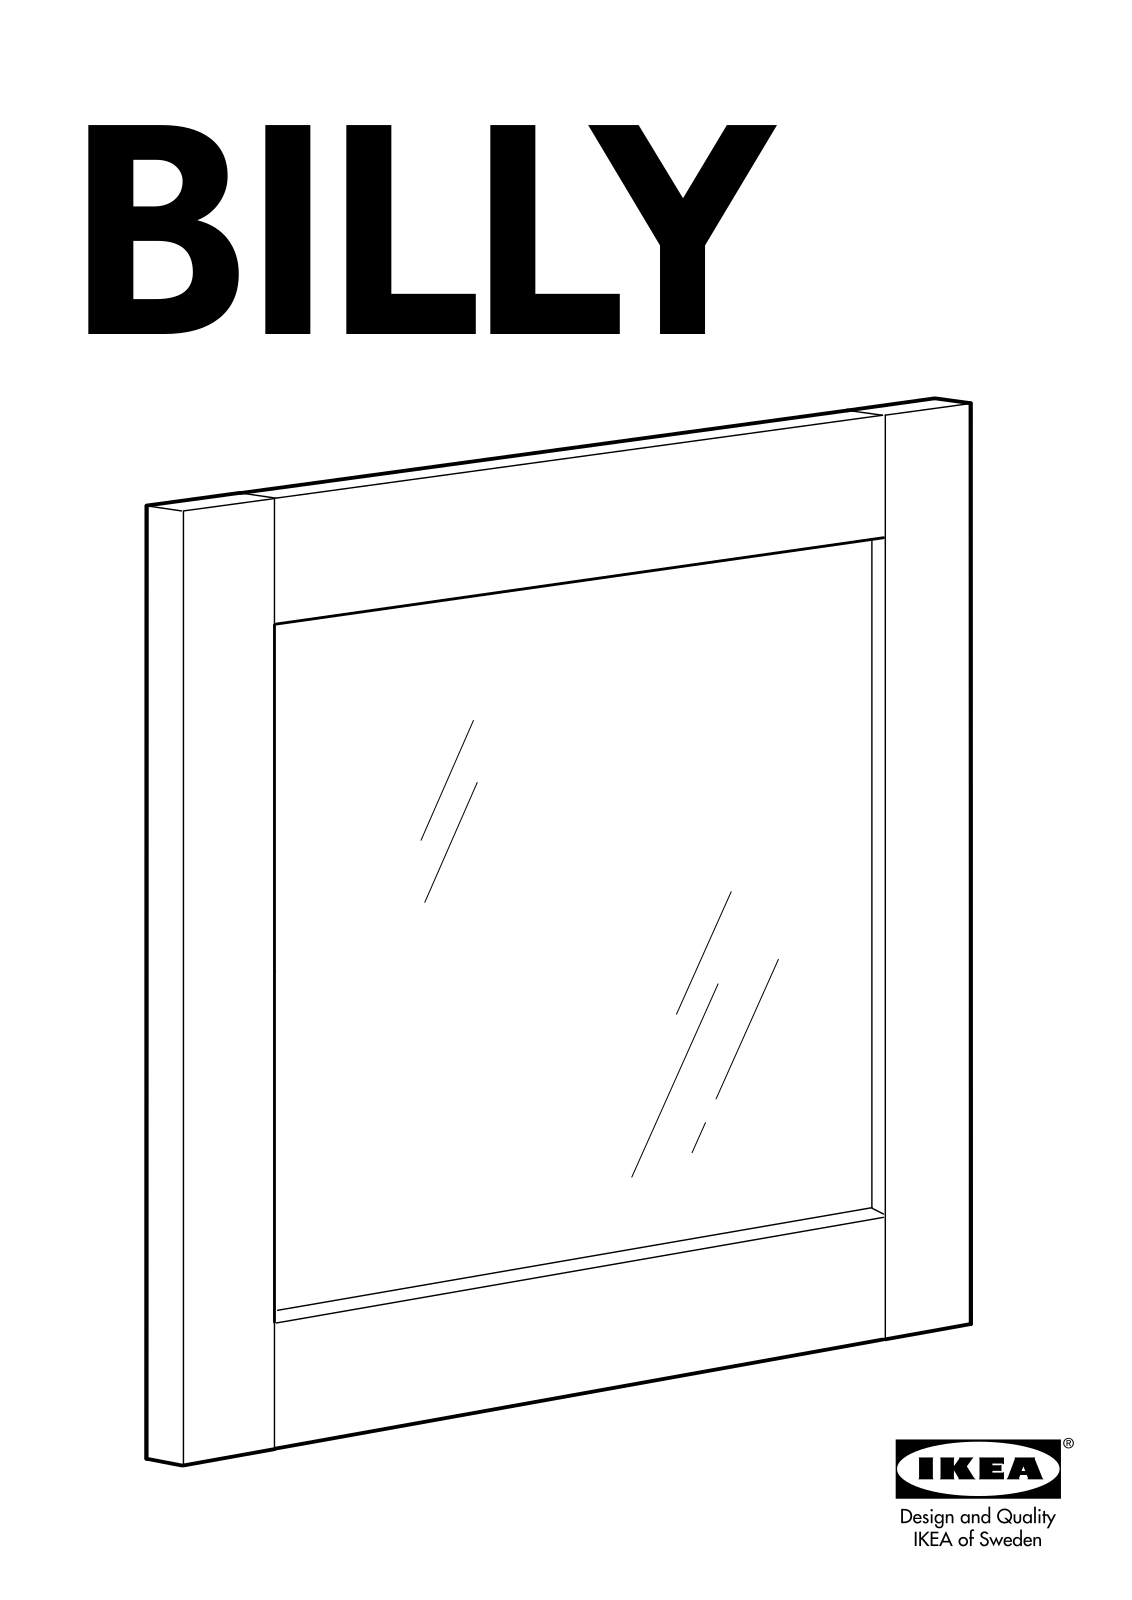 IKEA BILLY BYOM GLASS 15 3/4X14